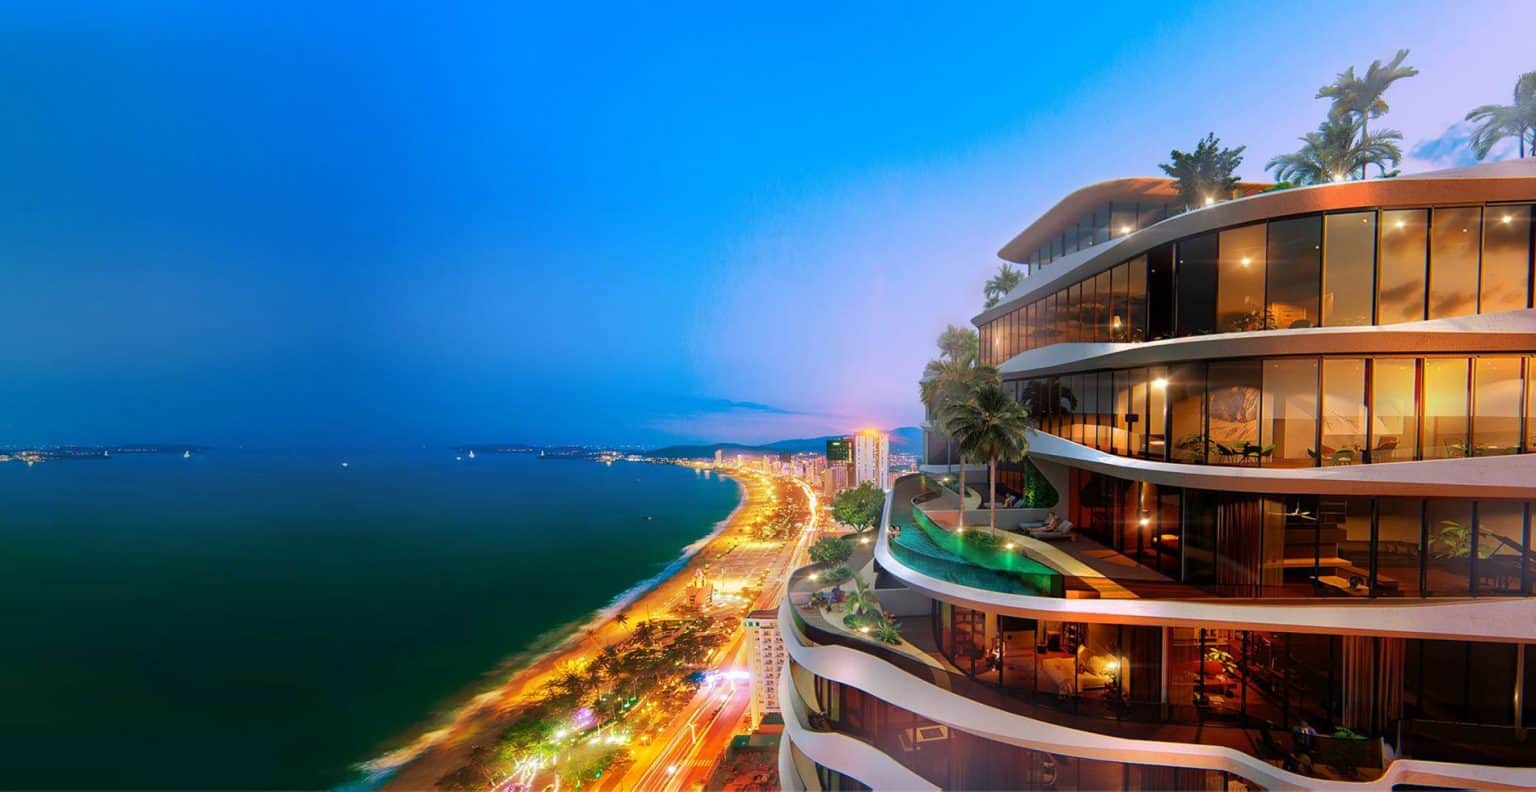 Mặt tiền the aston luxury residence đường Trần Phú, vị trí được mệnh danh là con đường ven biển đẹp nhất của Nha Trang. nơi có tiềm năng phát triển kinh tế mạnh mẽ về du lịch – dịch vụ